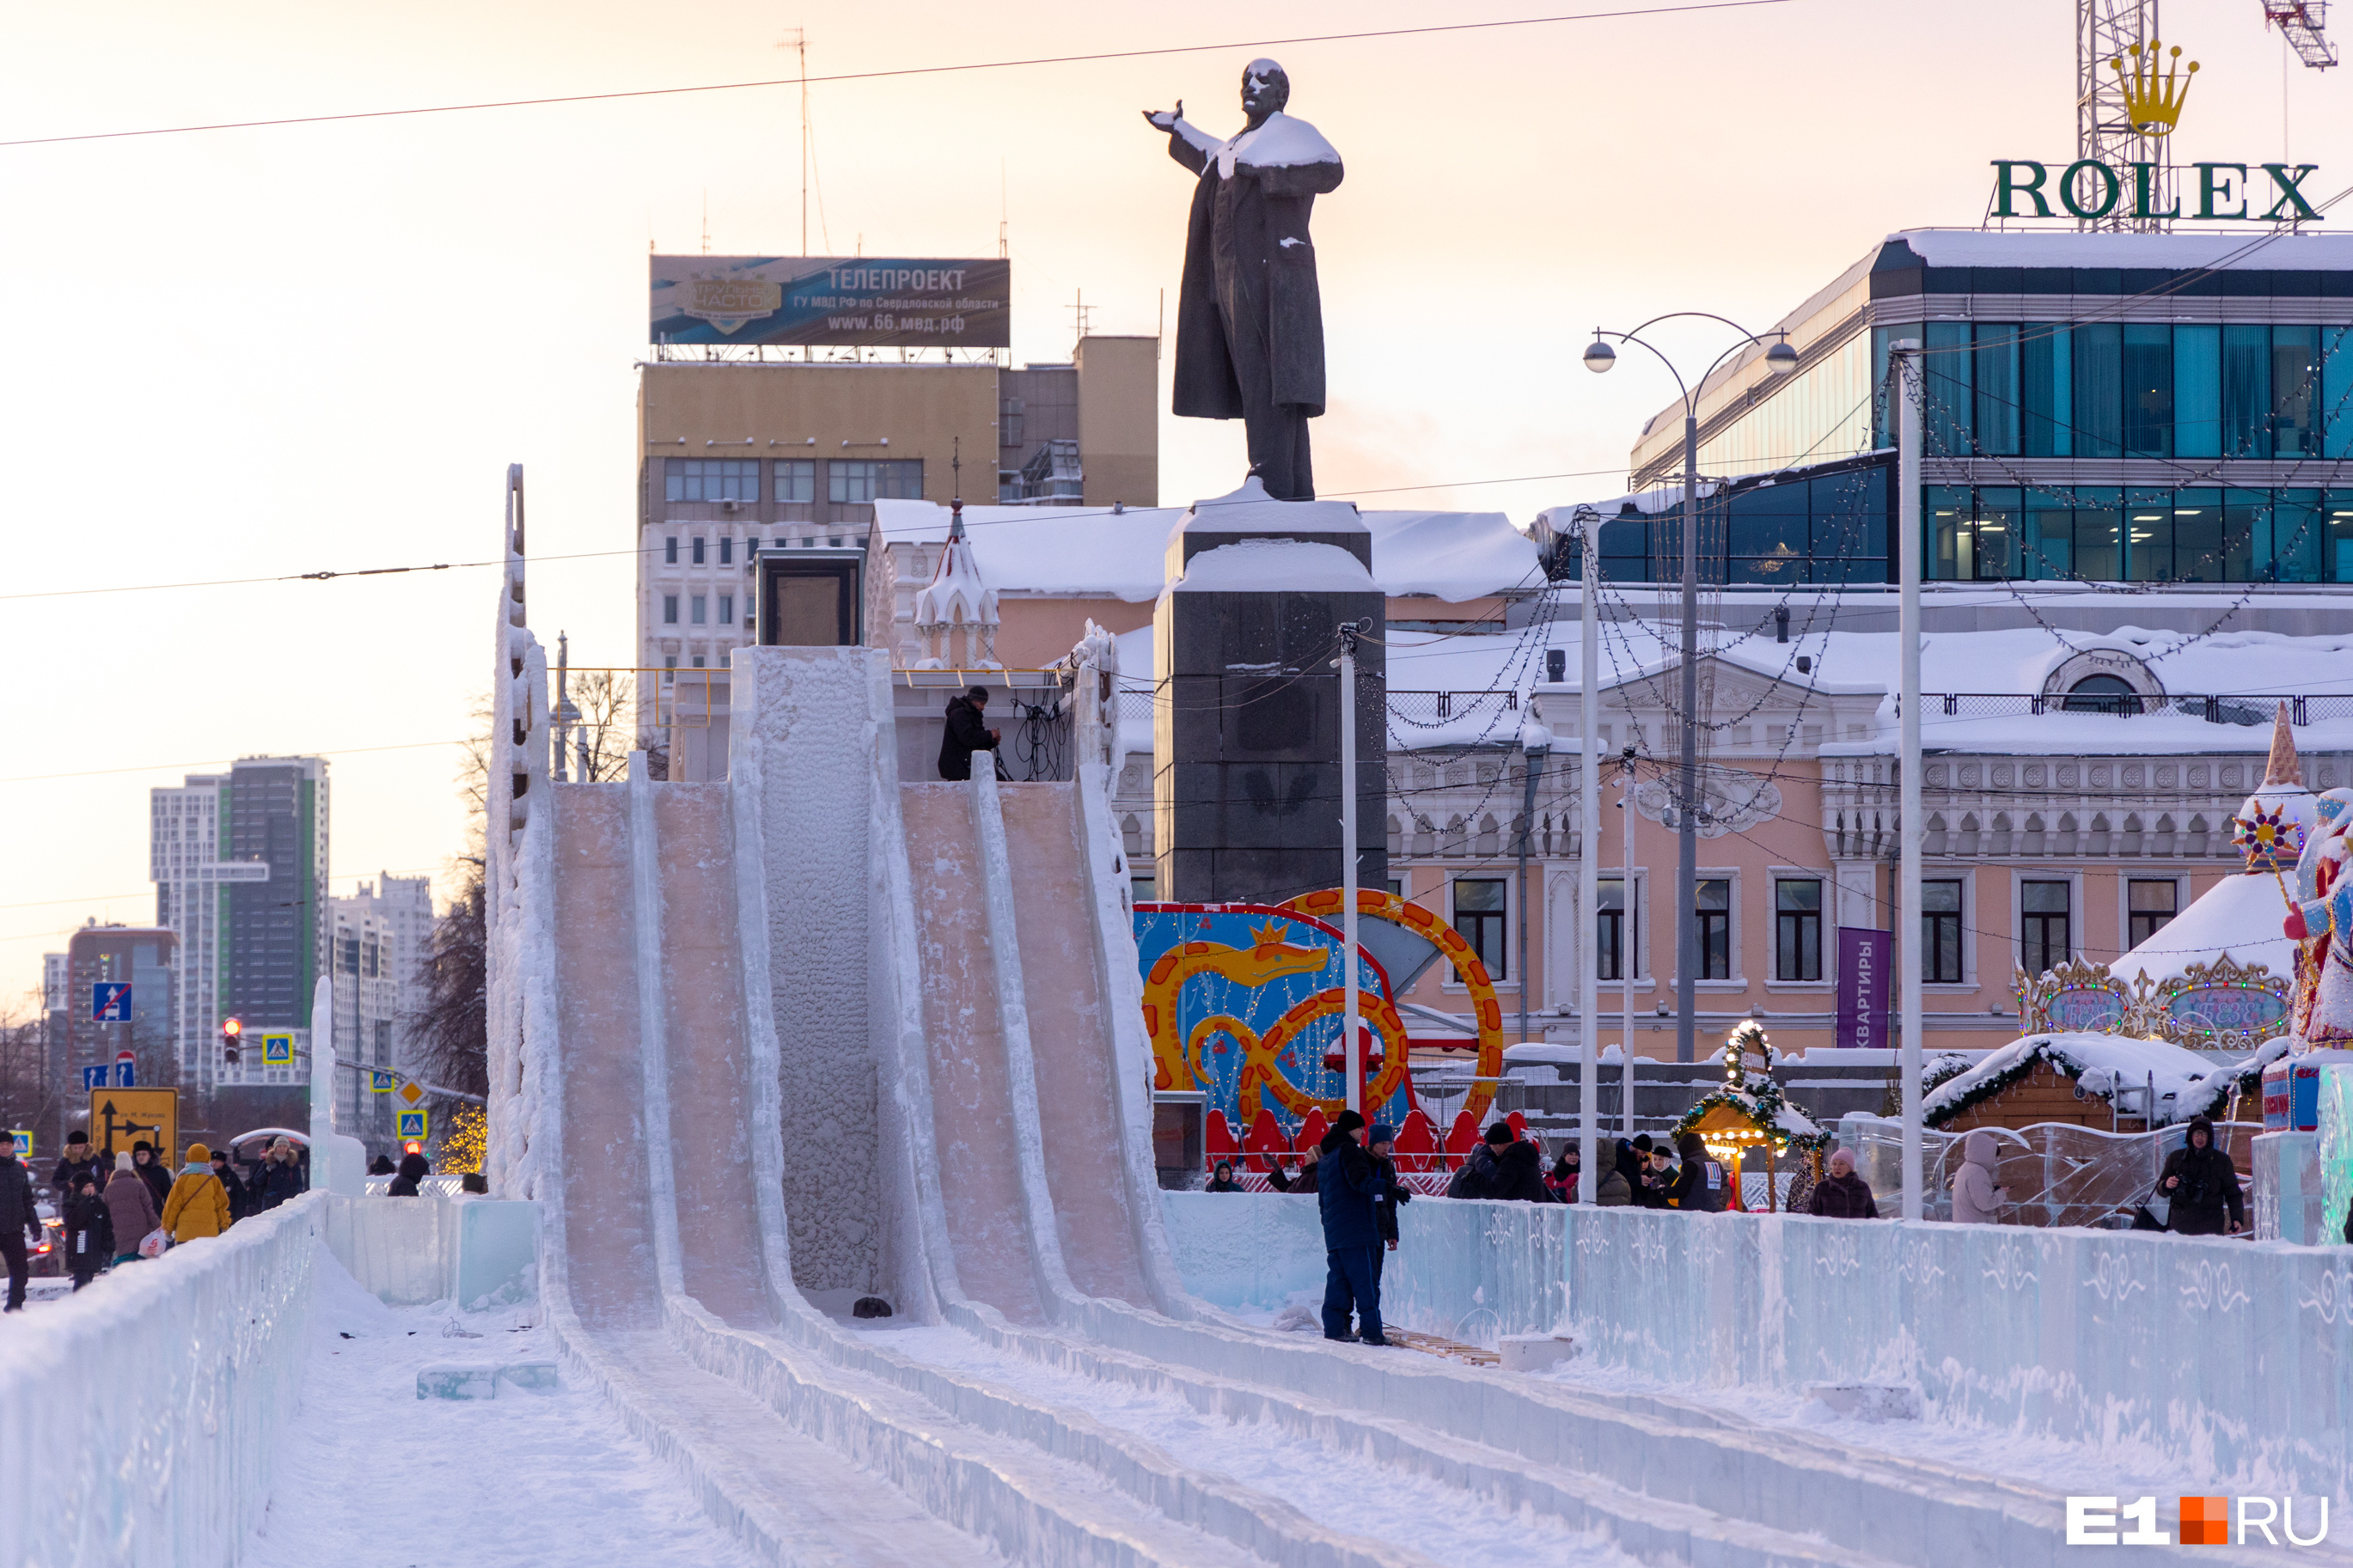 Почему в главном ледовом городке Екатеринбурга берут деньги за спуск с горки? Отвечает чиновник мэрии